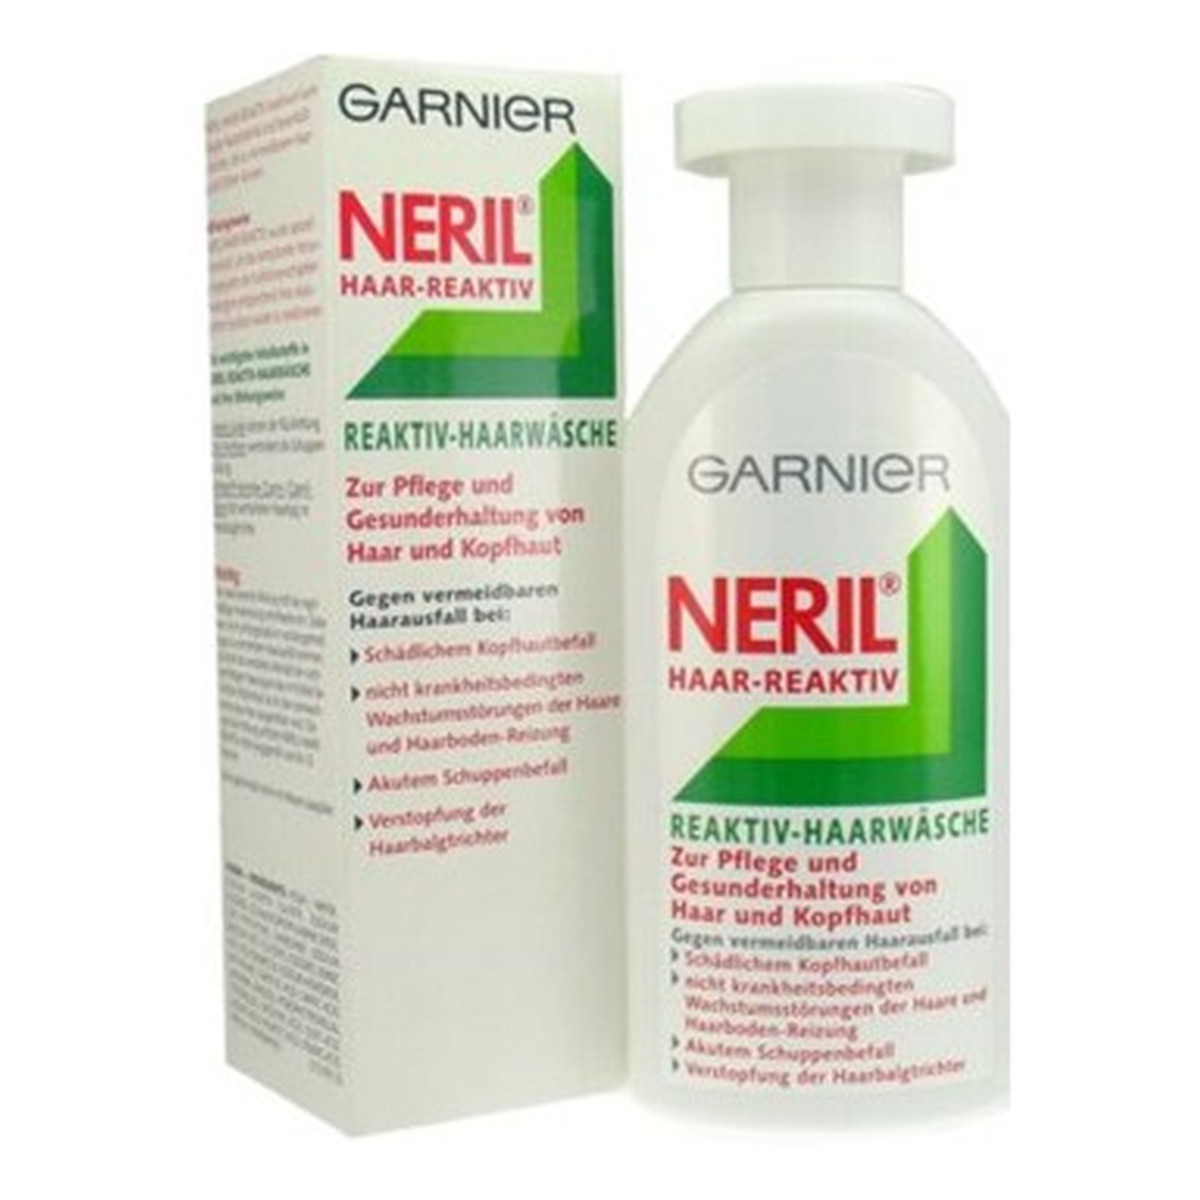 neril szampon wycofany